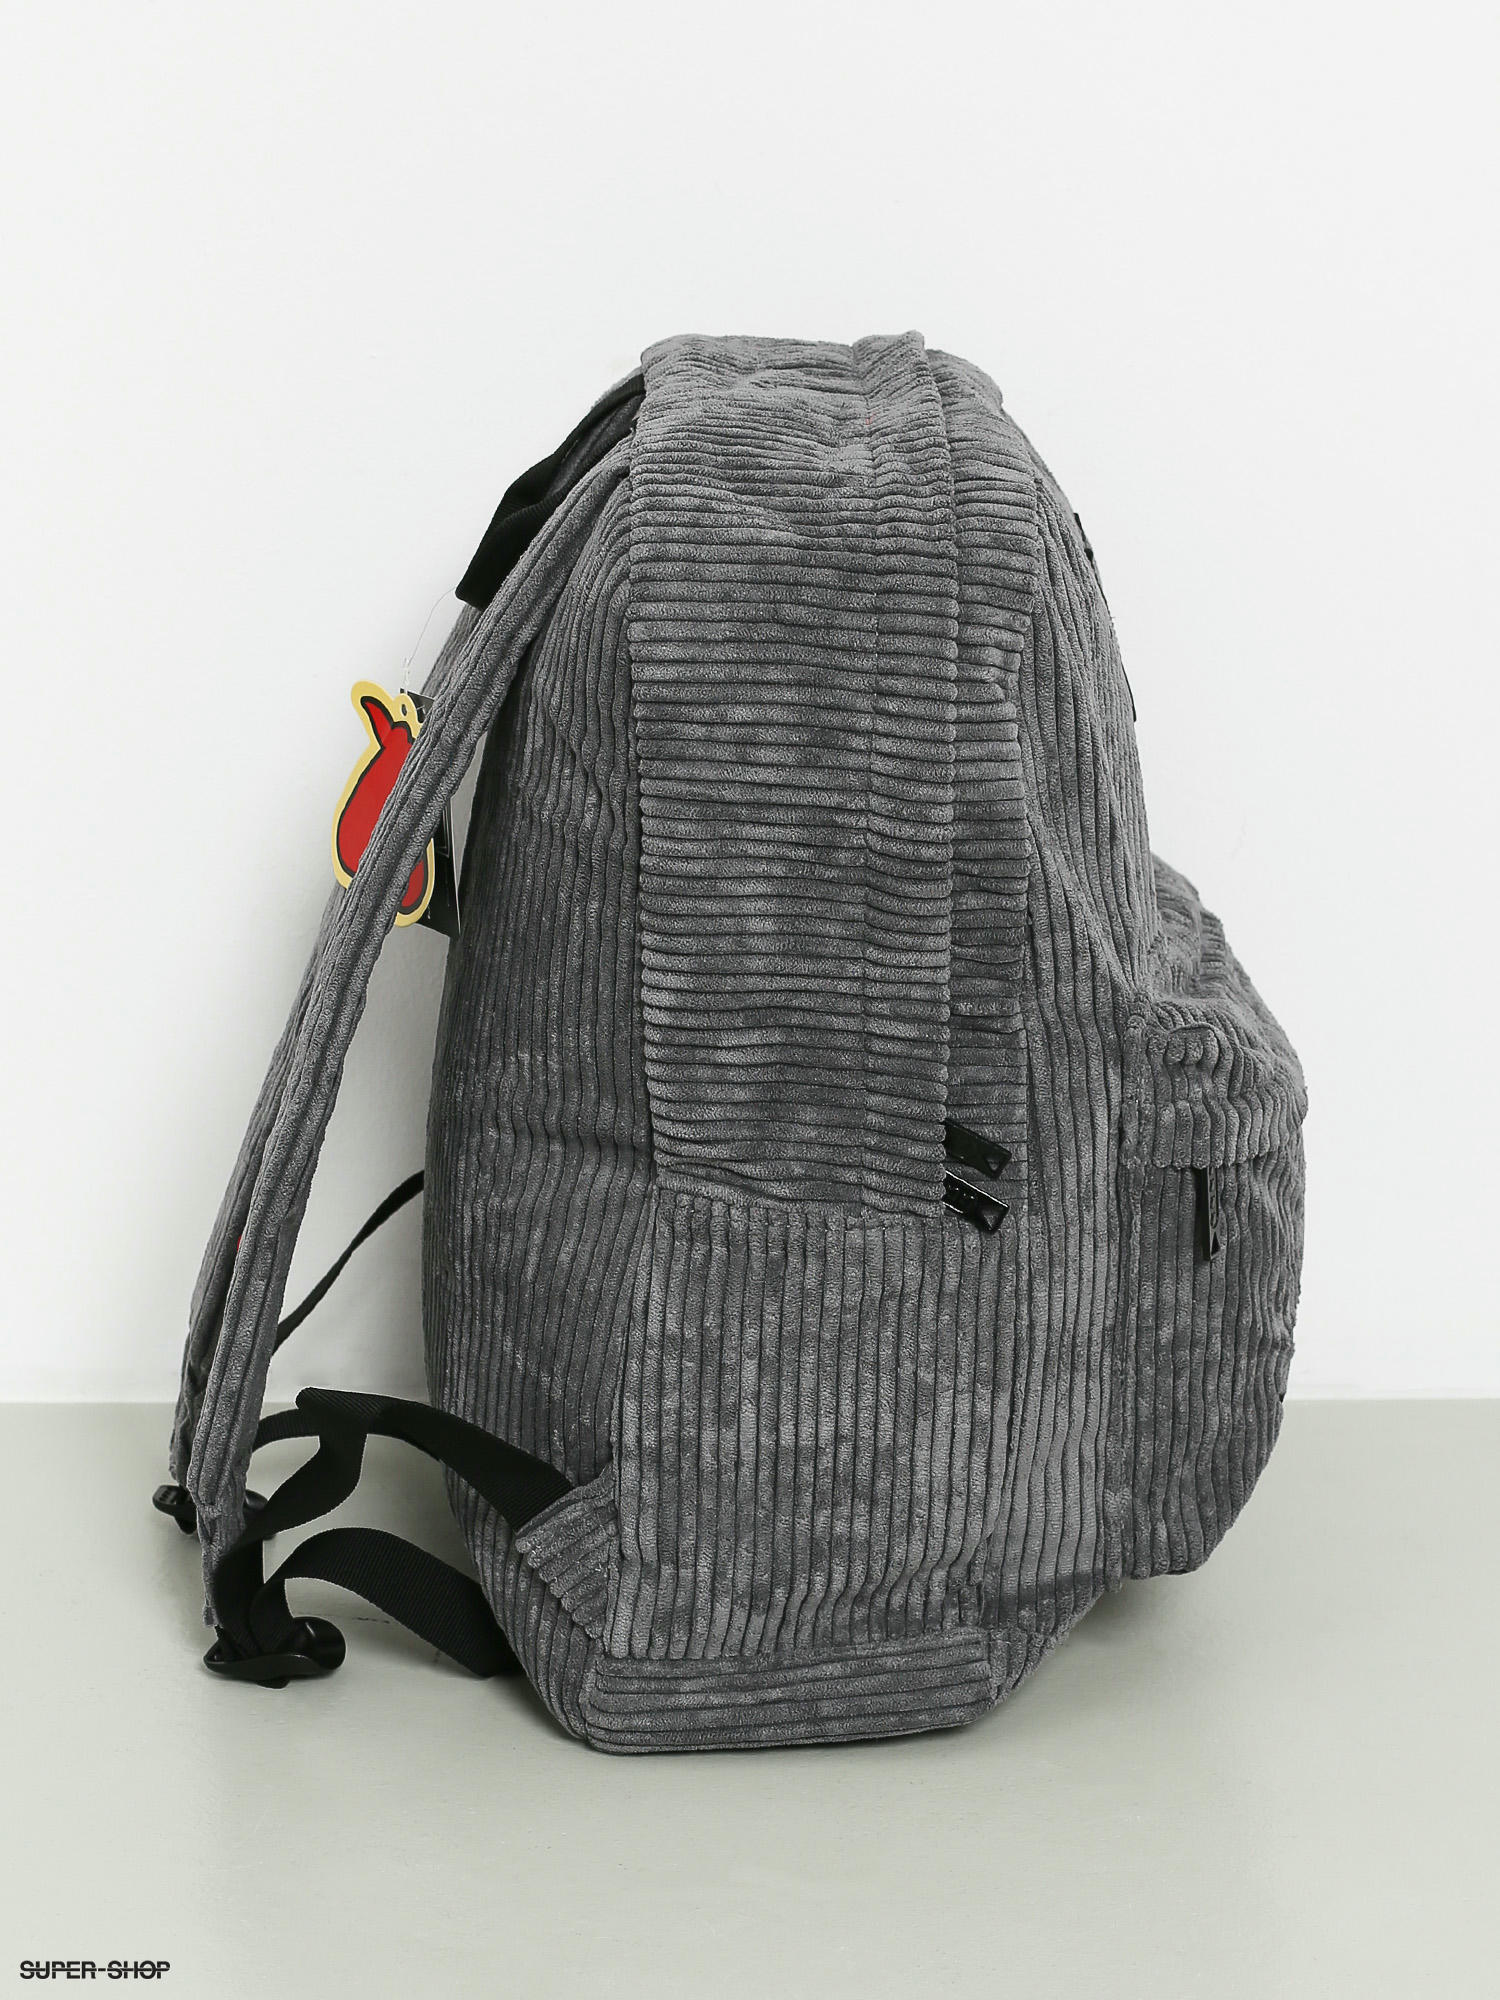 Recensie moeder Aanleg Toy Machine Scout Backpack (grey)